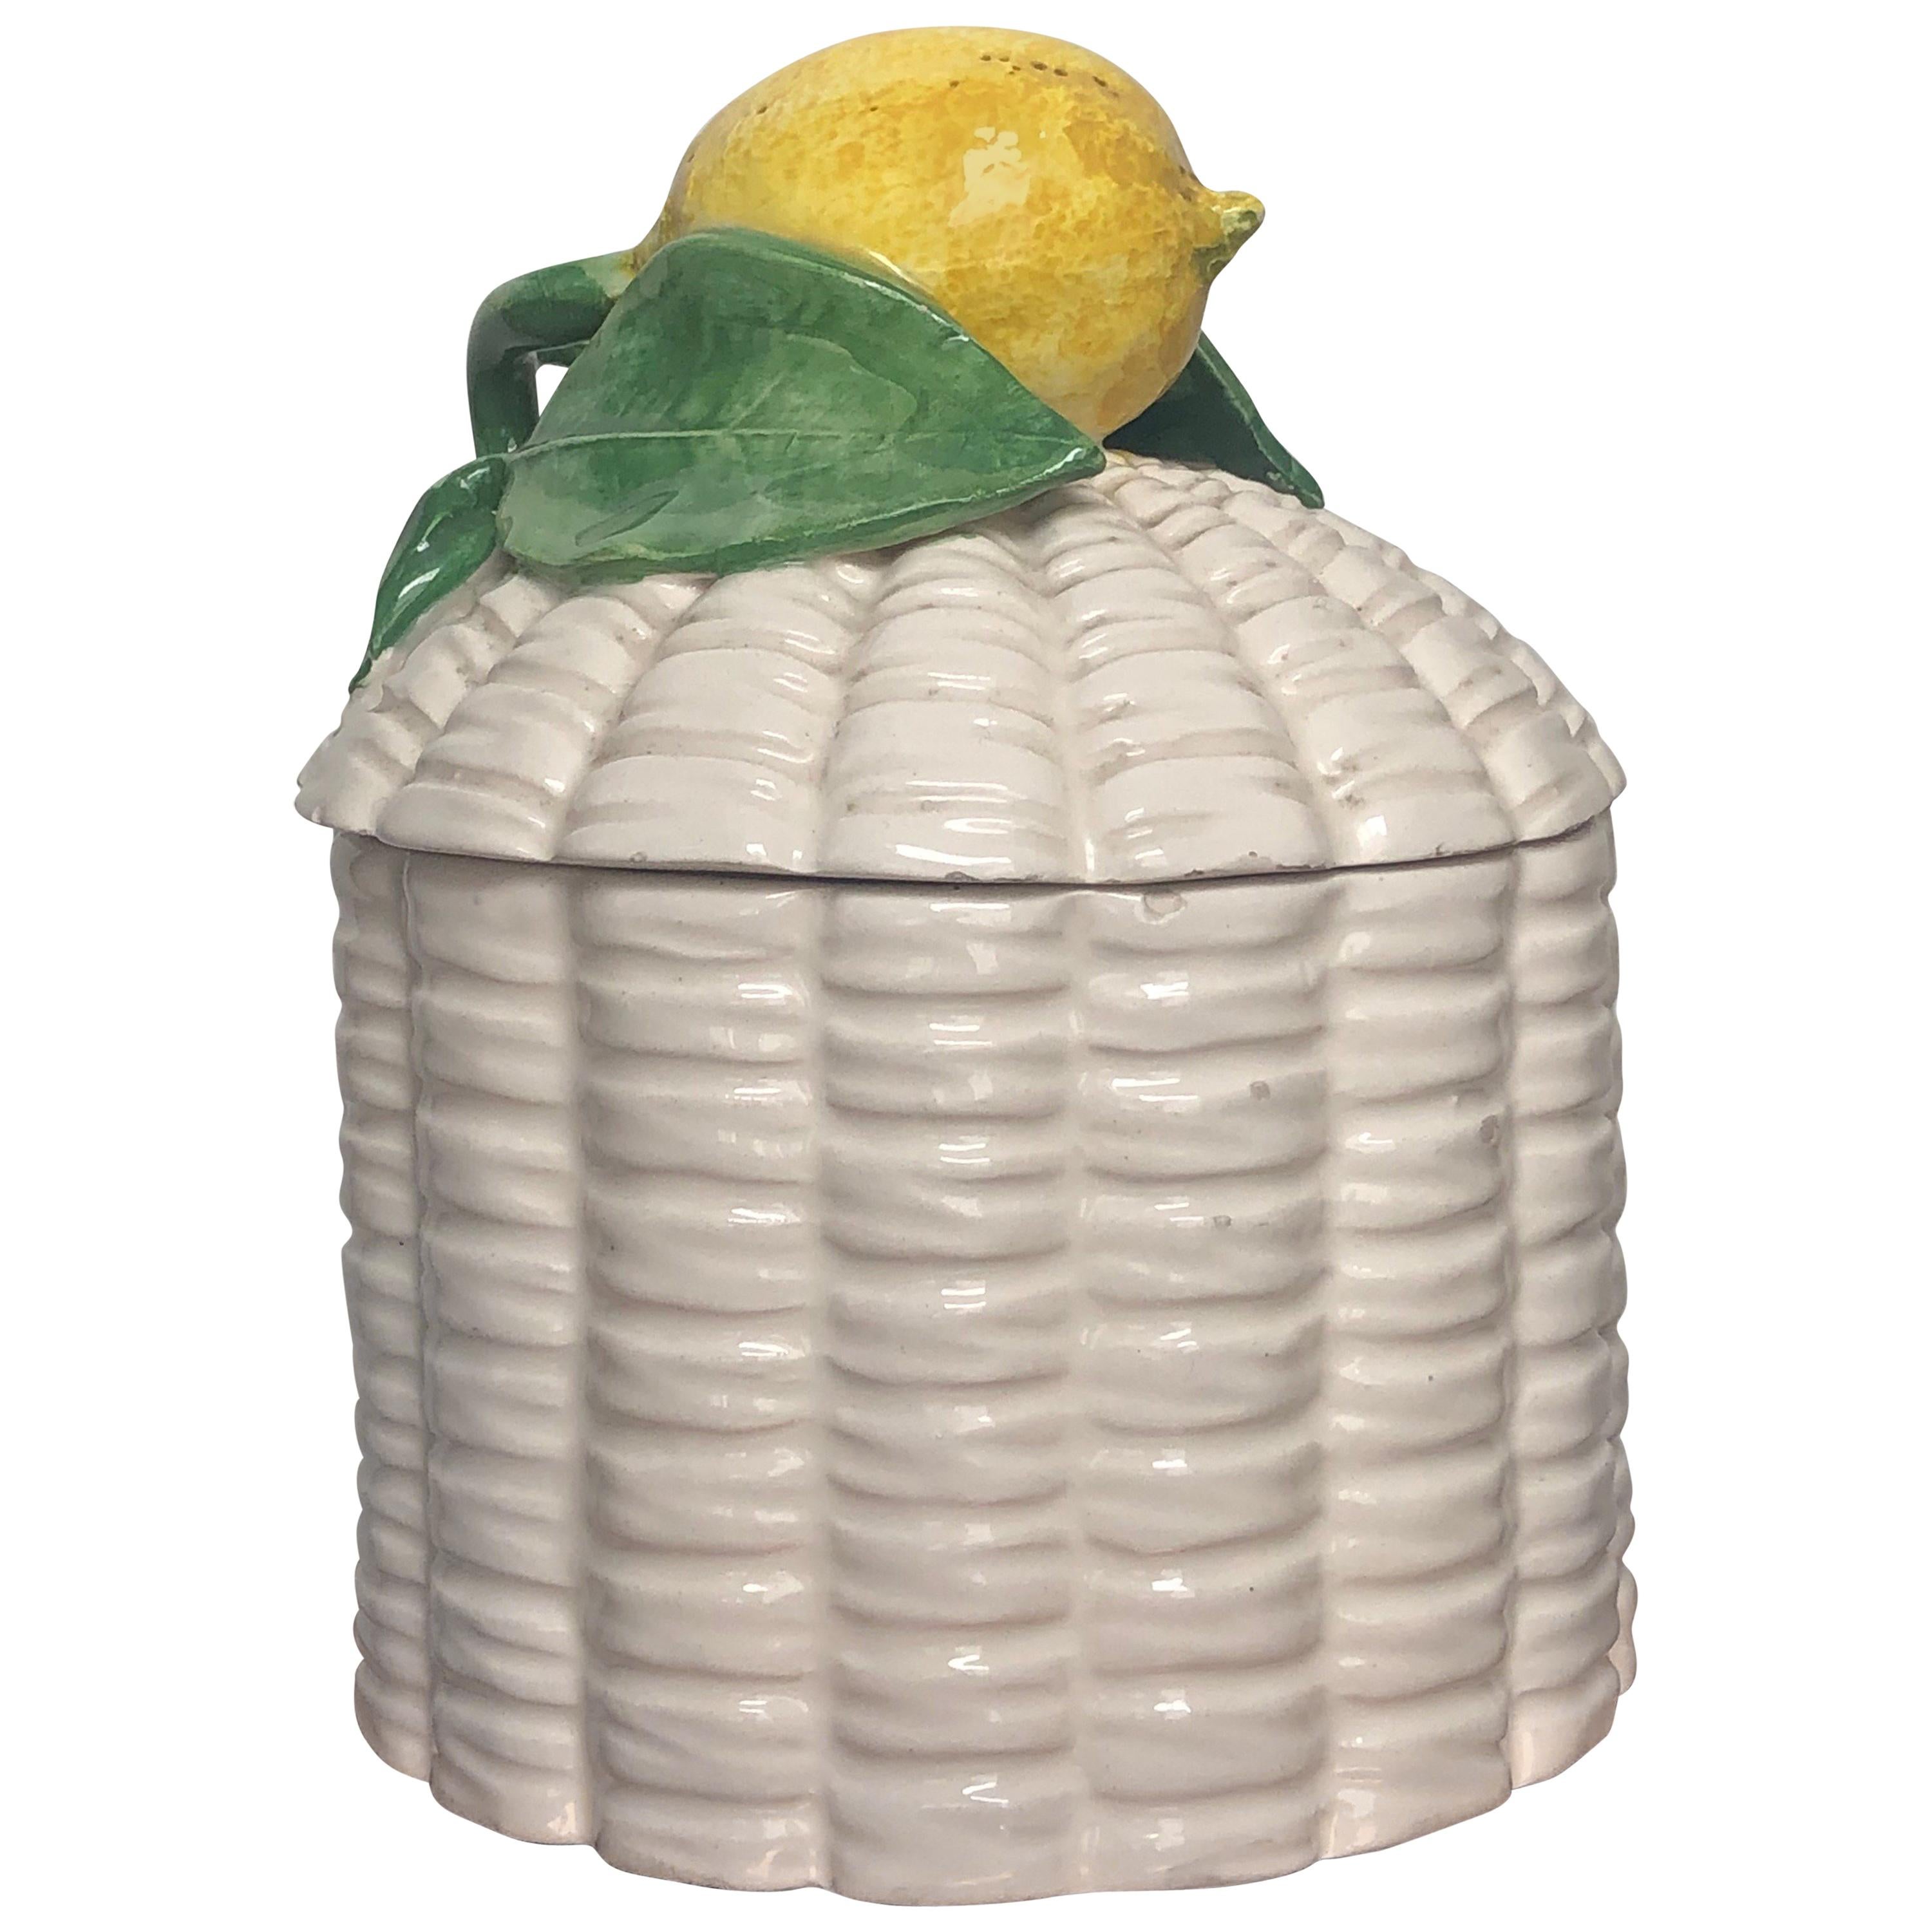 Sicilian Giovanni Capuani Este Porcelain Lemon Sugar Bowl Number 78, Italy 1940s